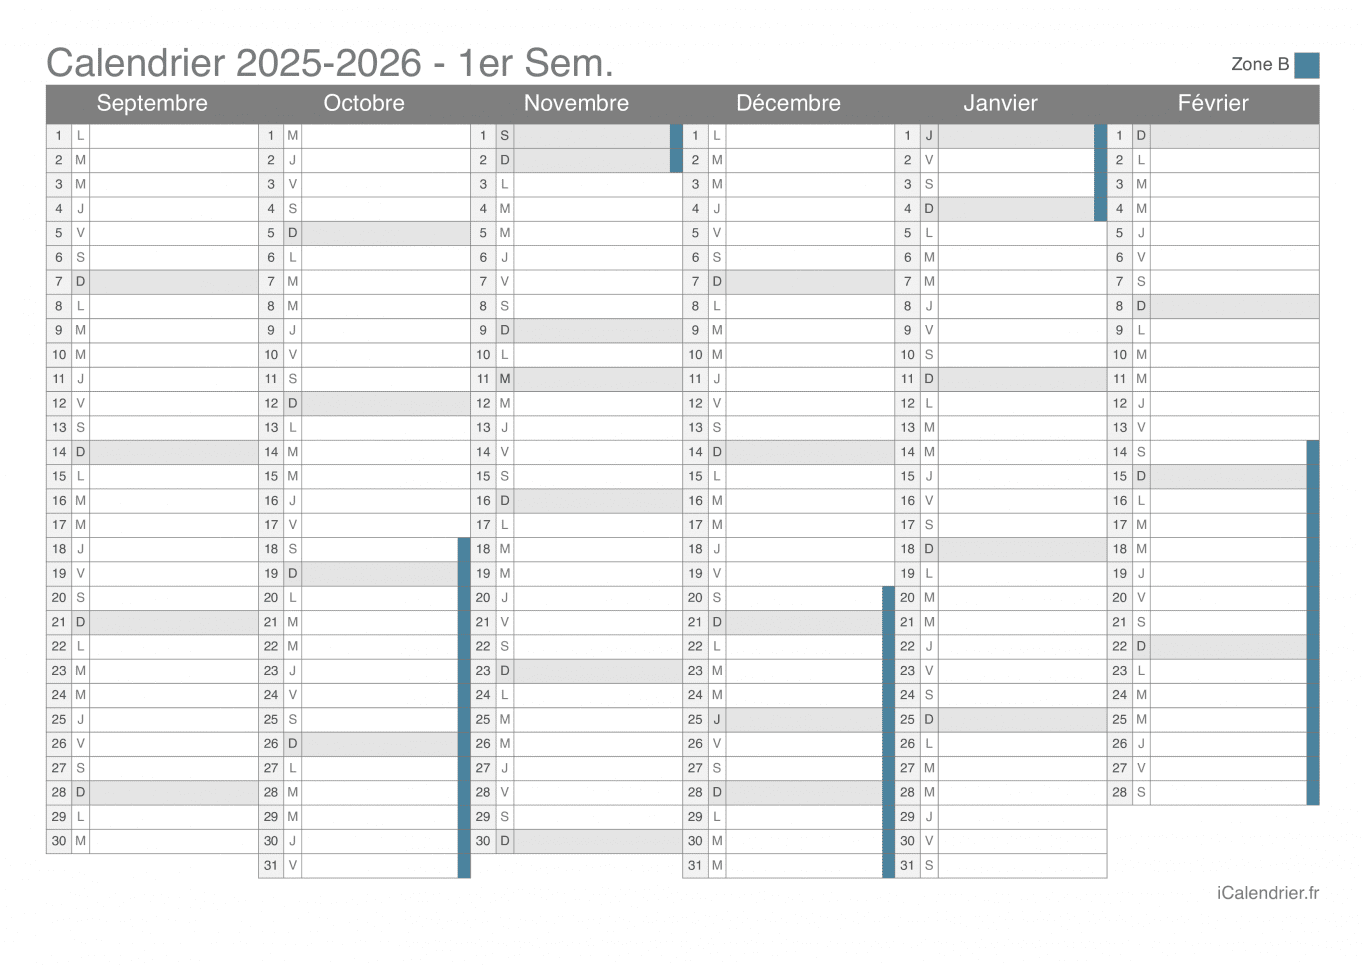 Calendrier des vacances scolaires 2025-2026 par semestre de la zone B